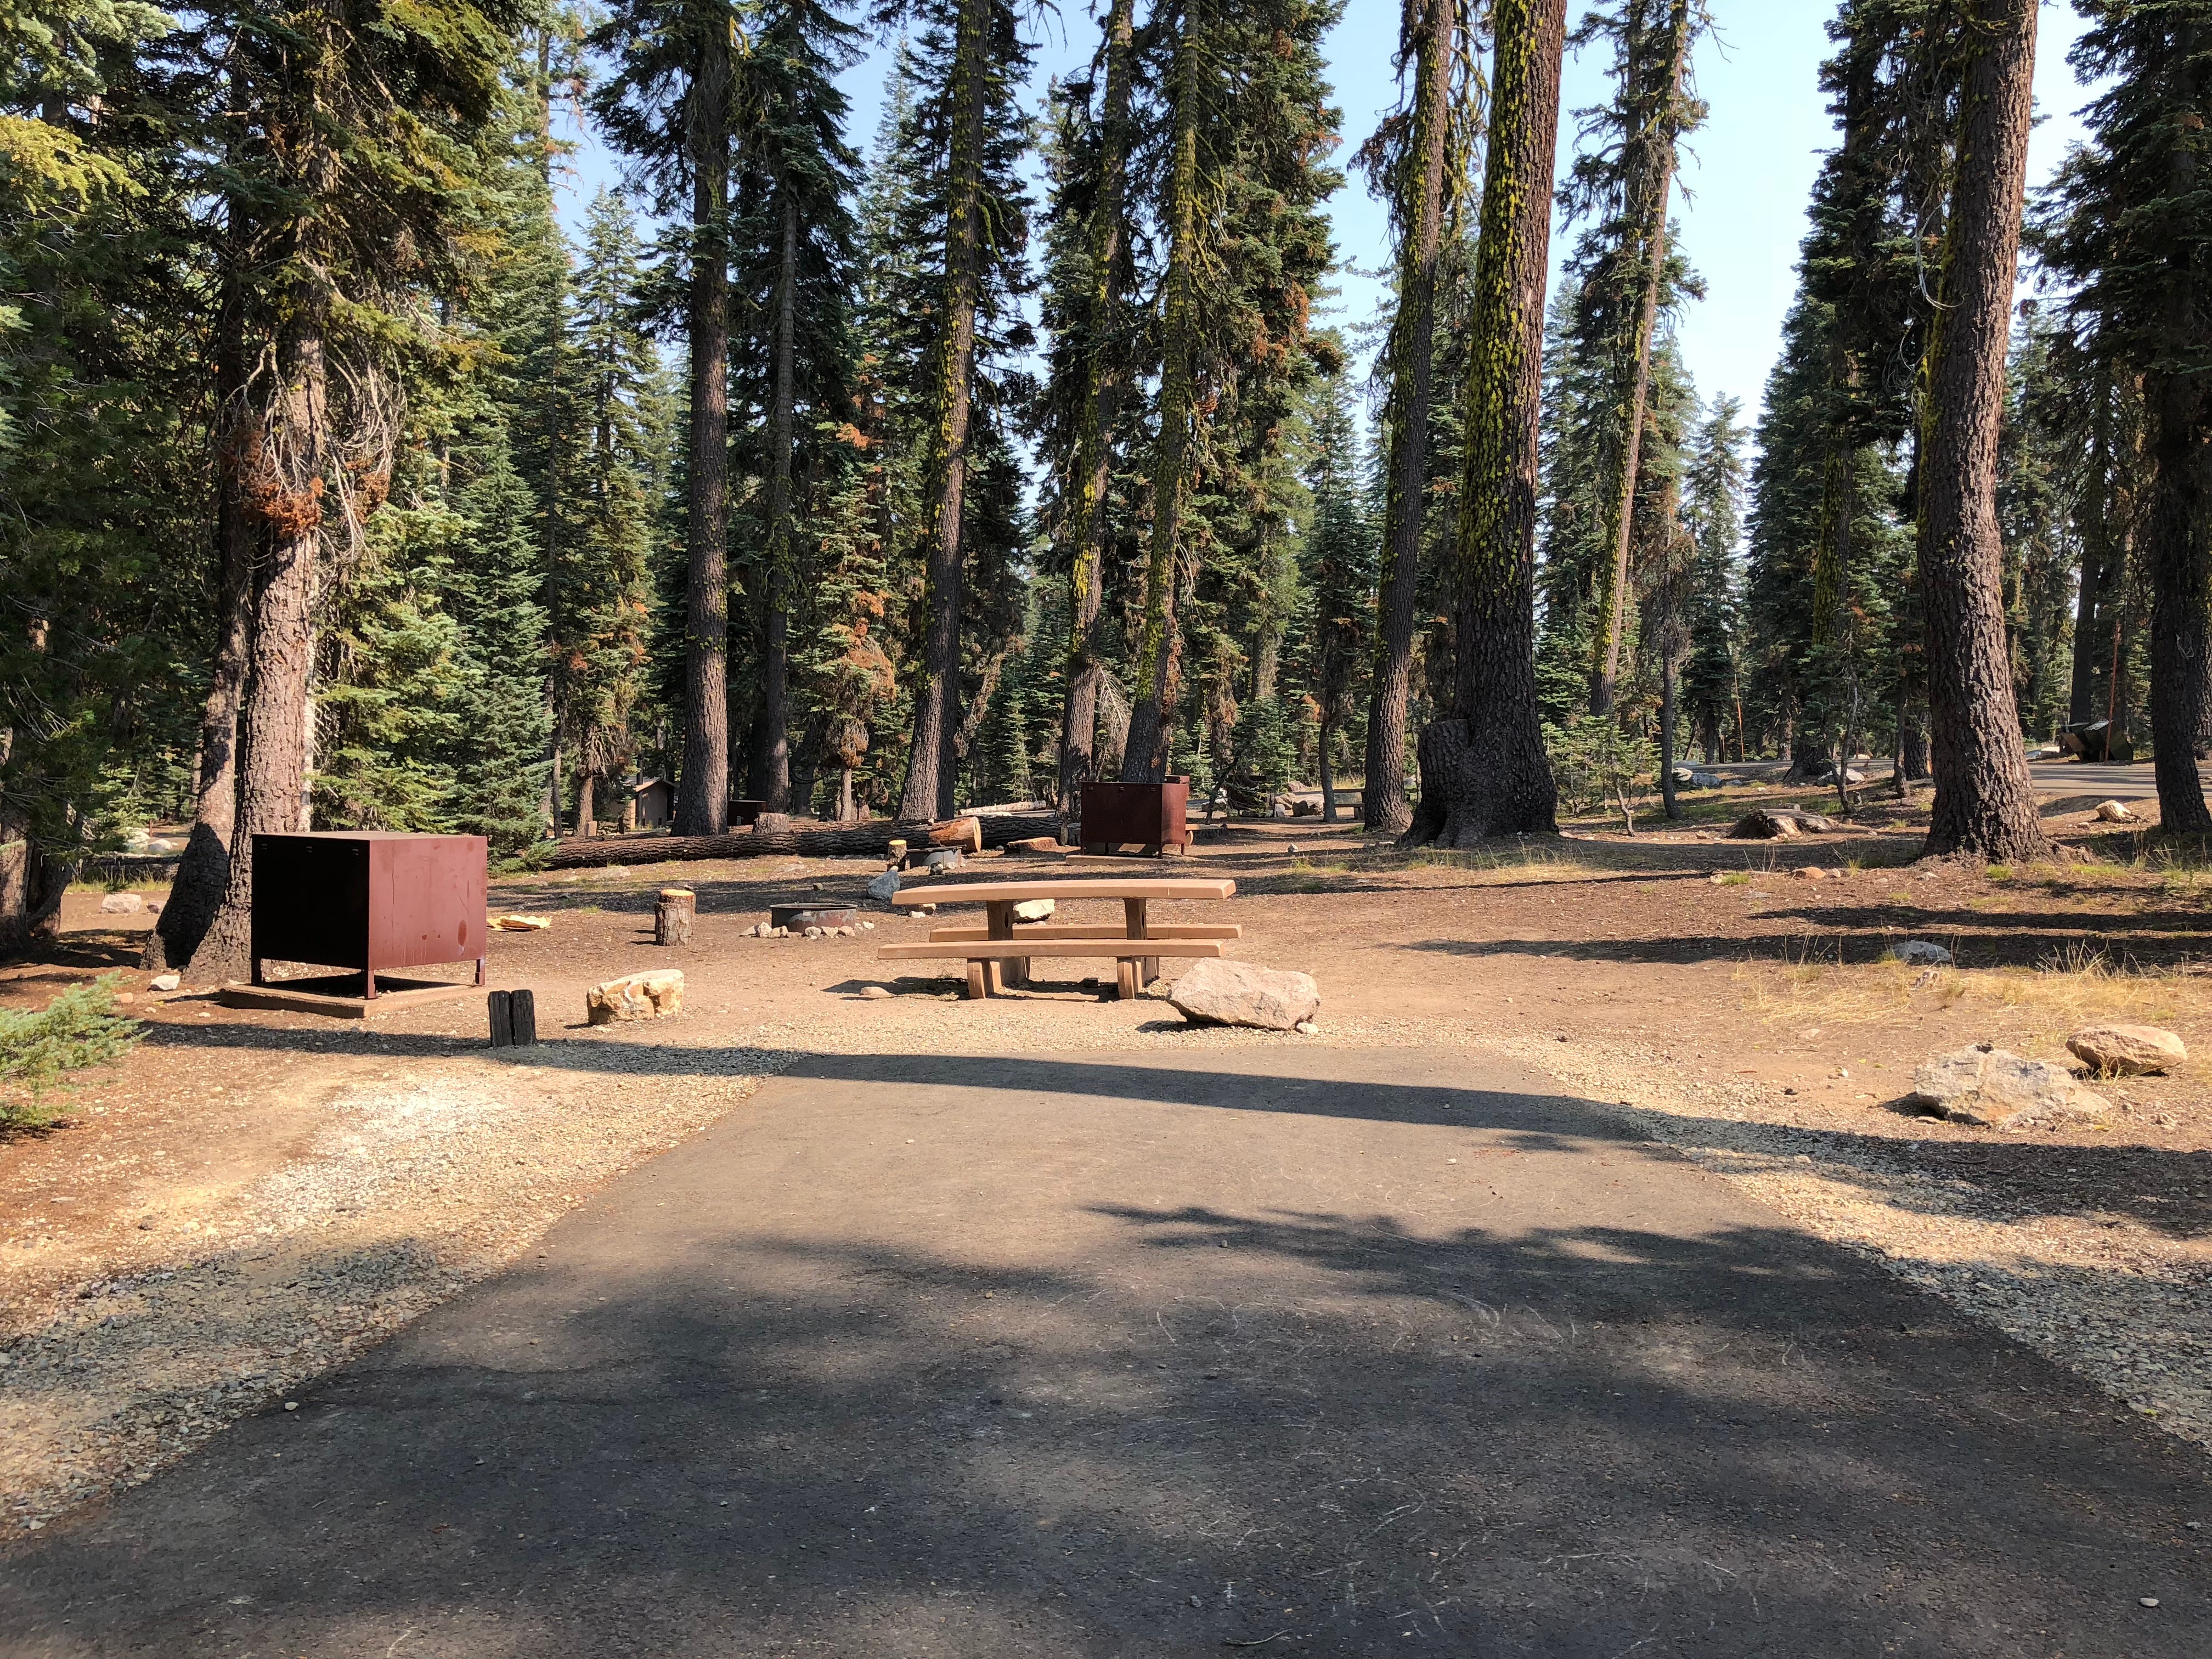 Empty campsites